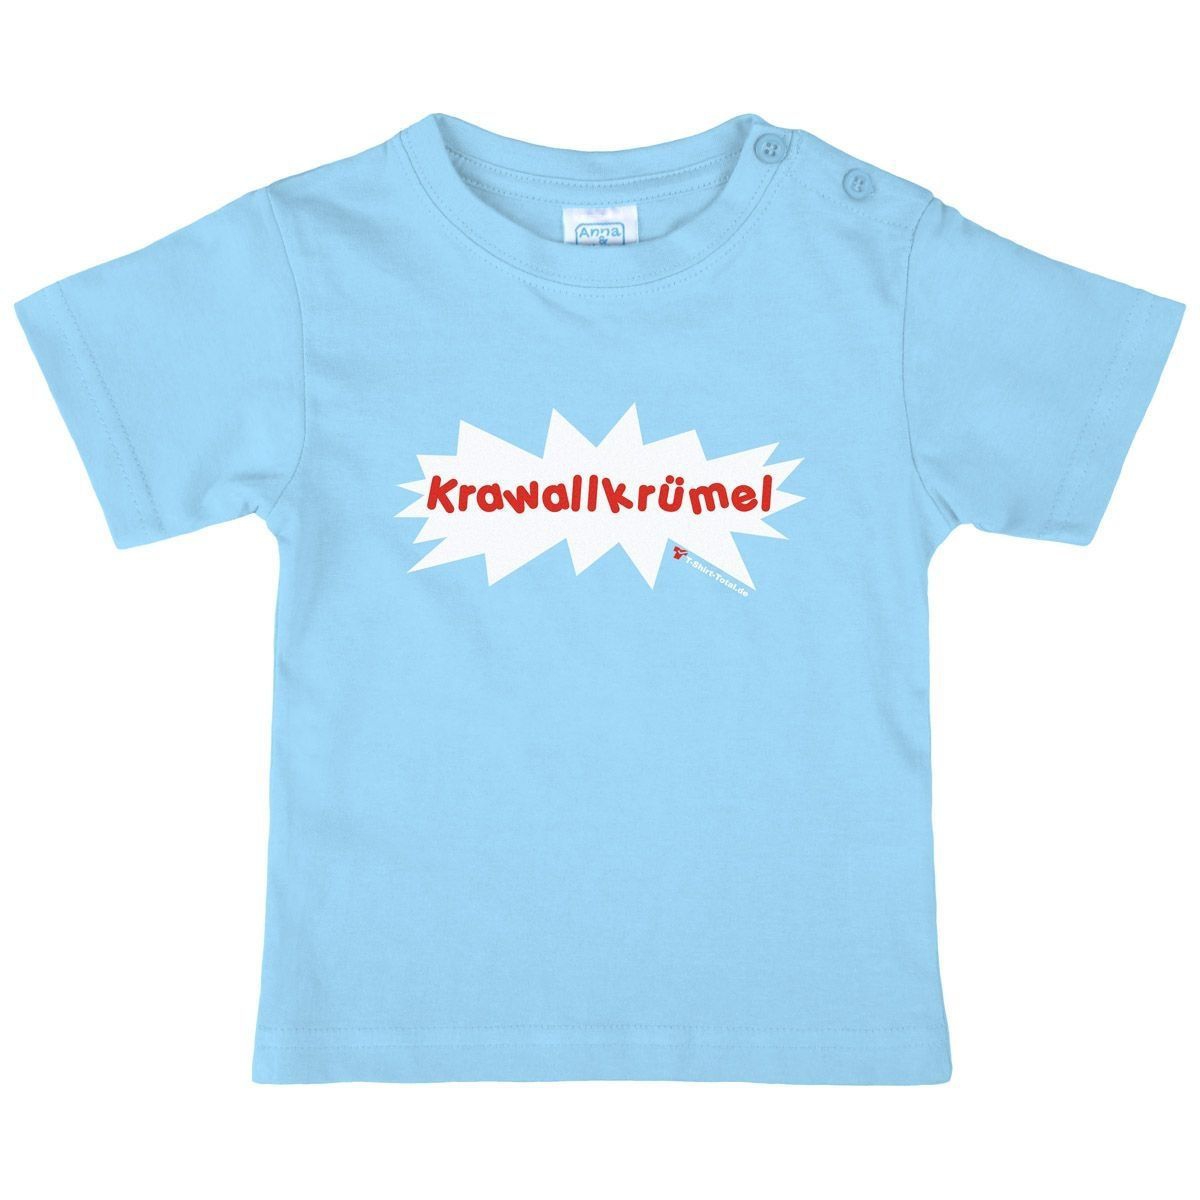 Krawallkrümel Kinder T-Shirt hellblau 134 / 140